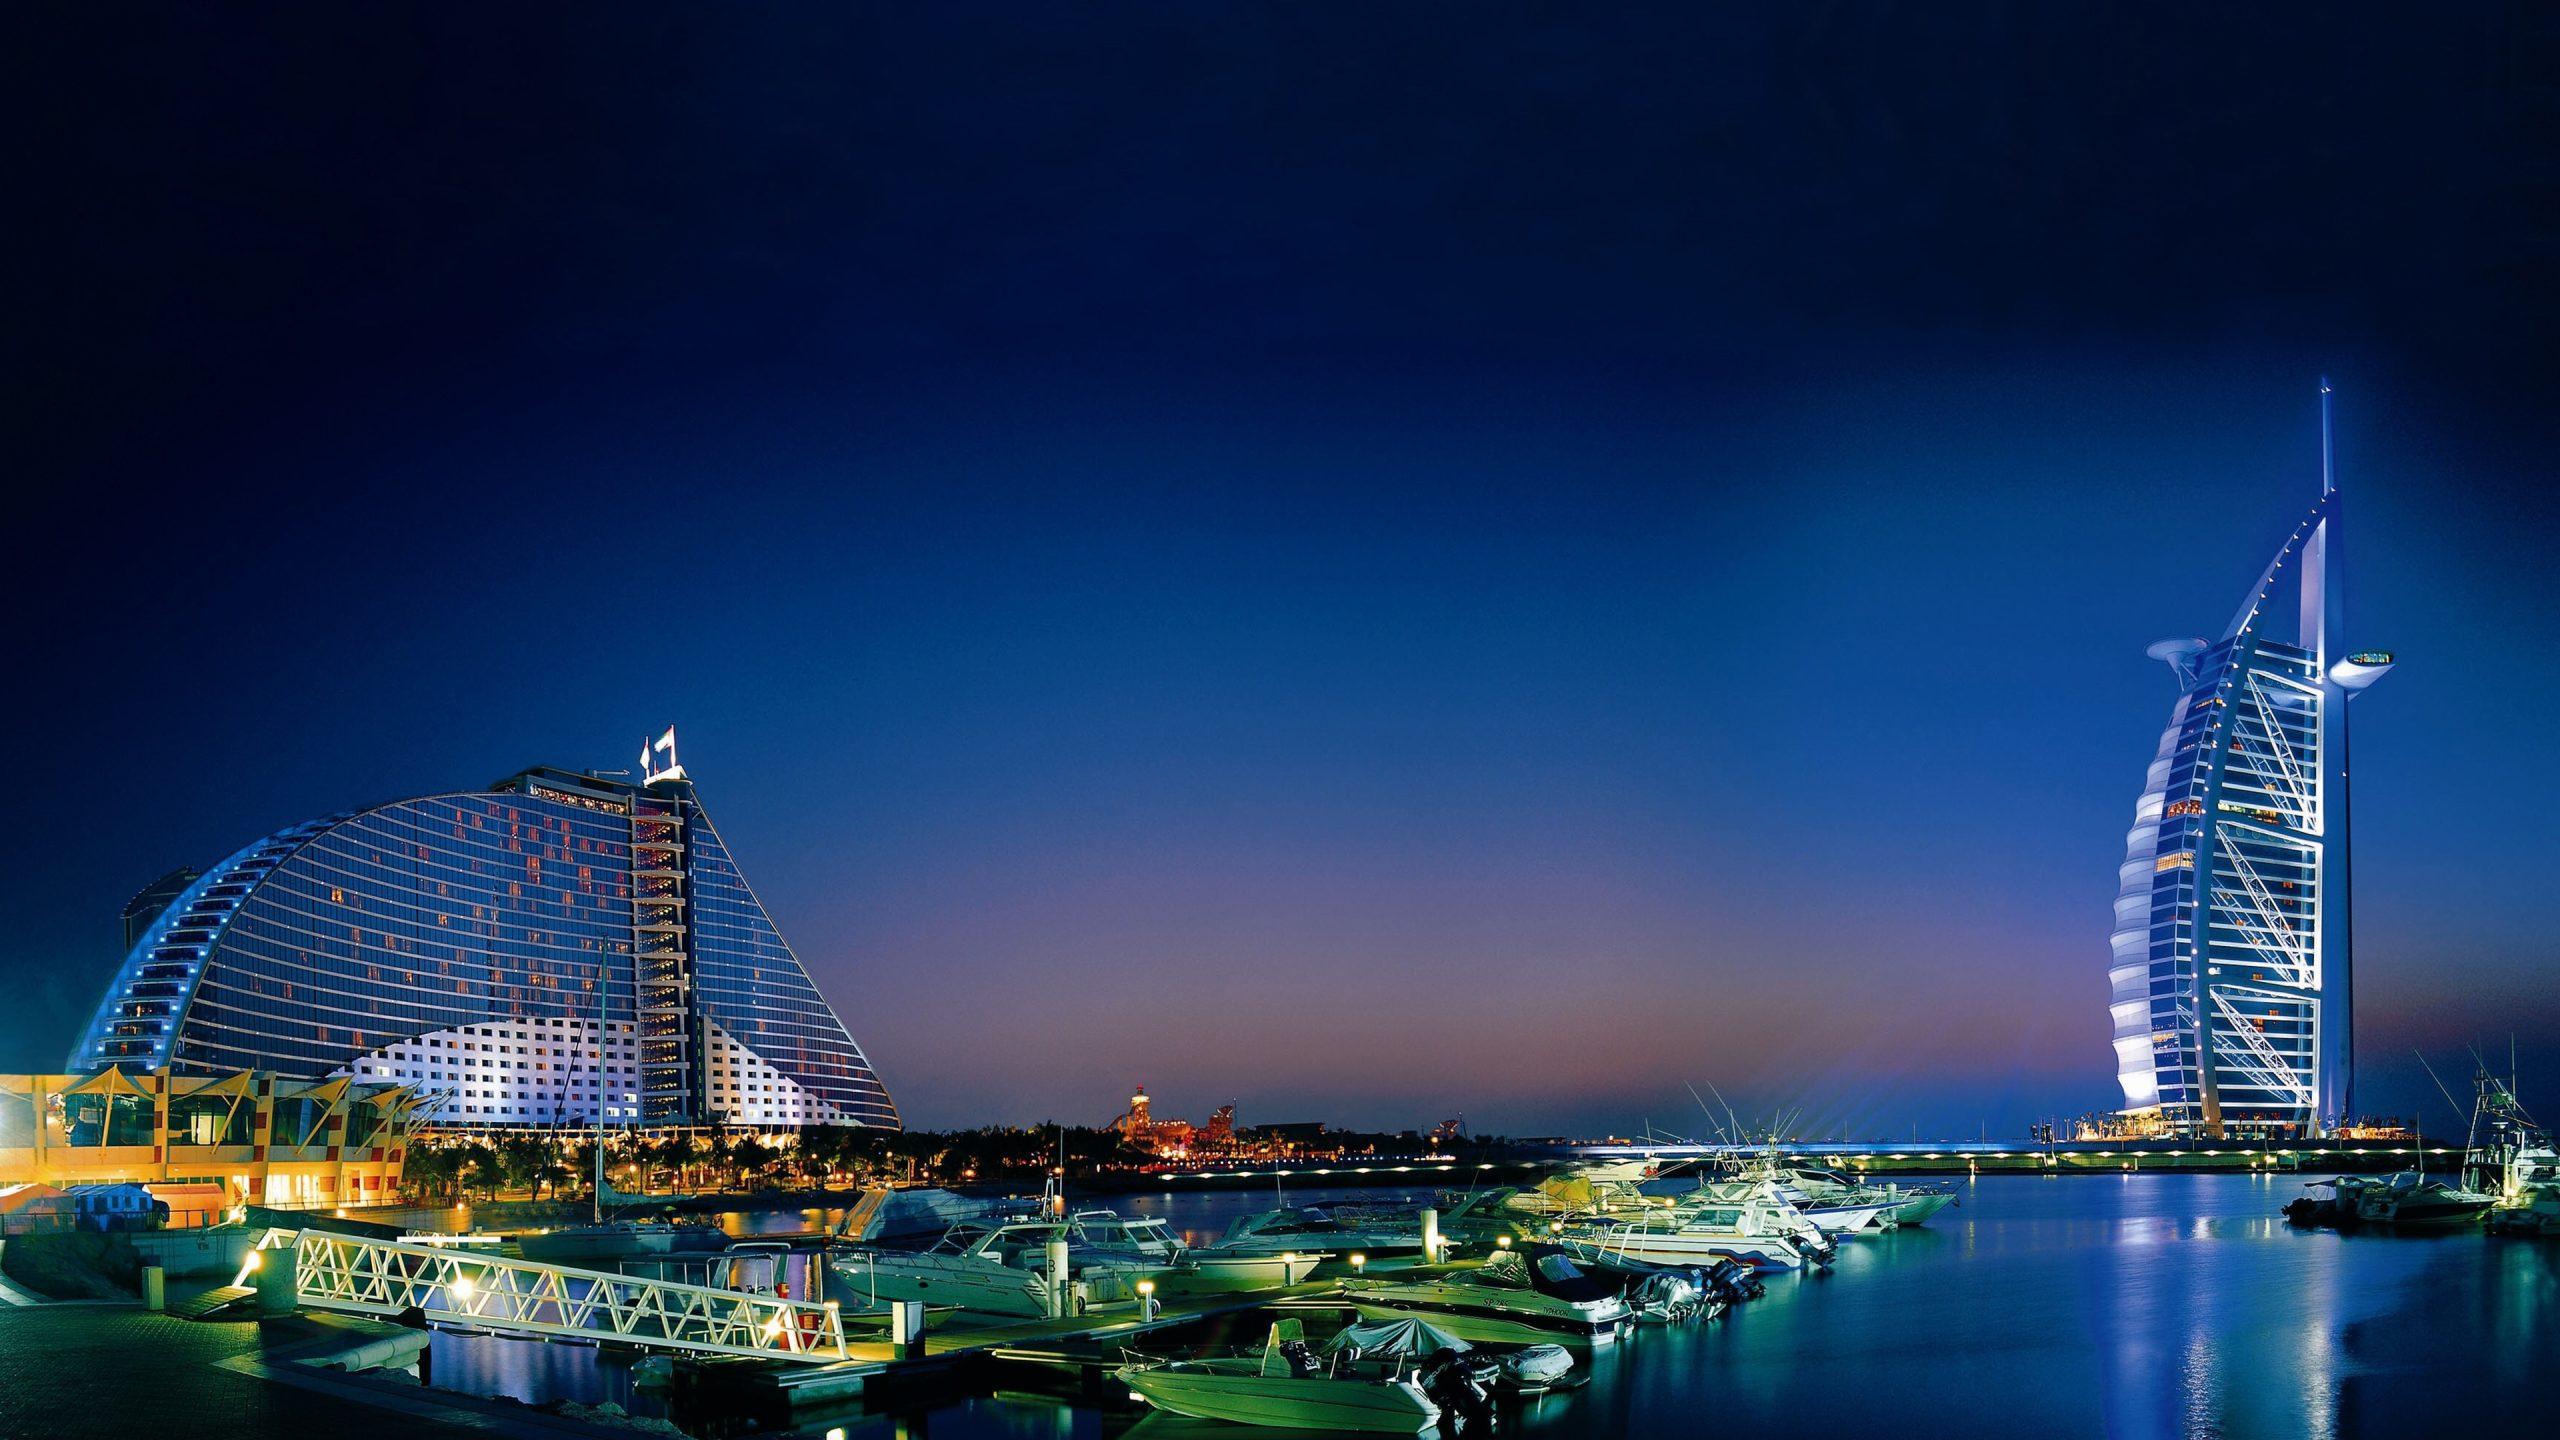  Dubajus išleido kriptovaliutų rinkodaros taisykles, kad geriau apsaugotų investuotojus